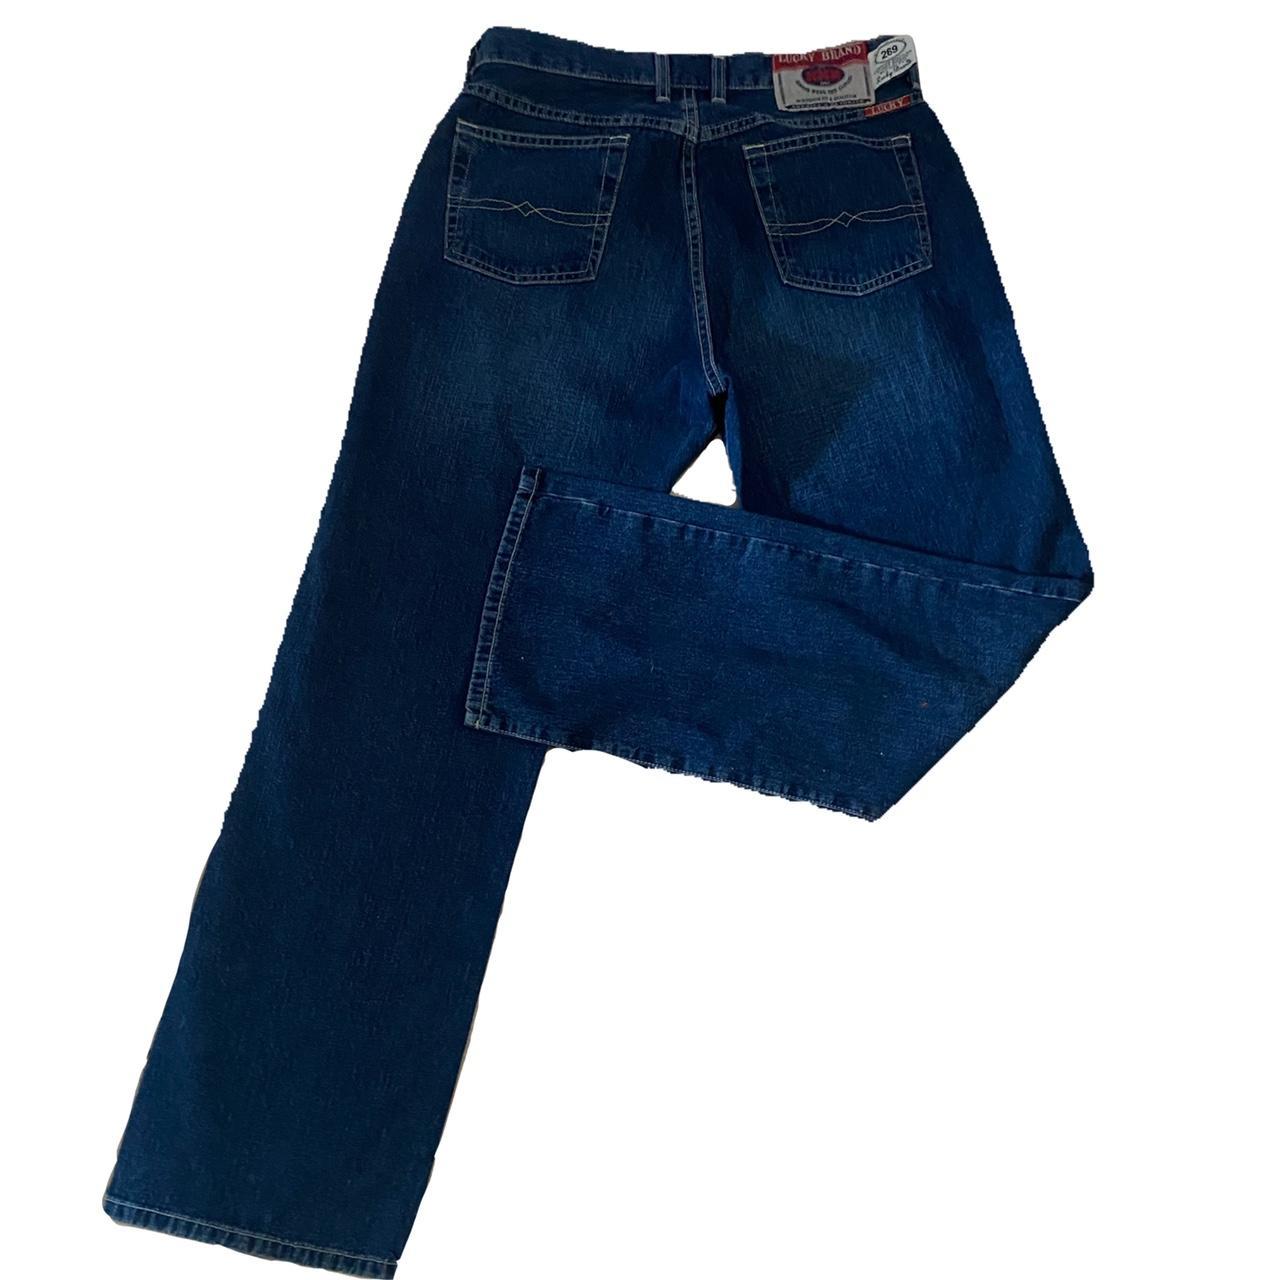 dope ass lucky brand jeans i love the zipper 😭i... - Depop